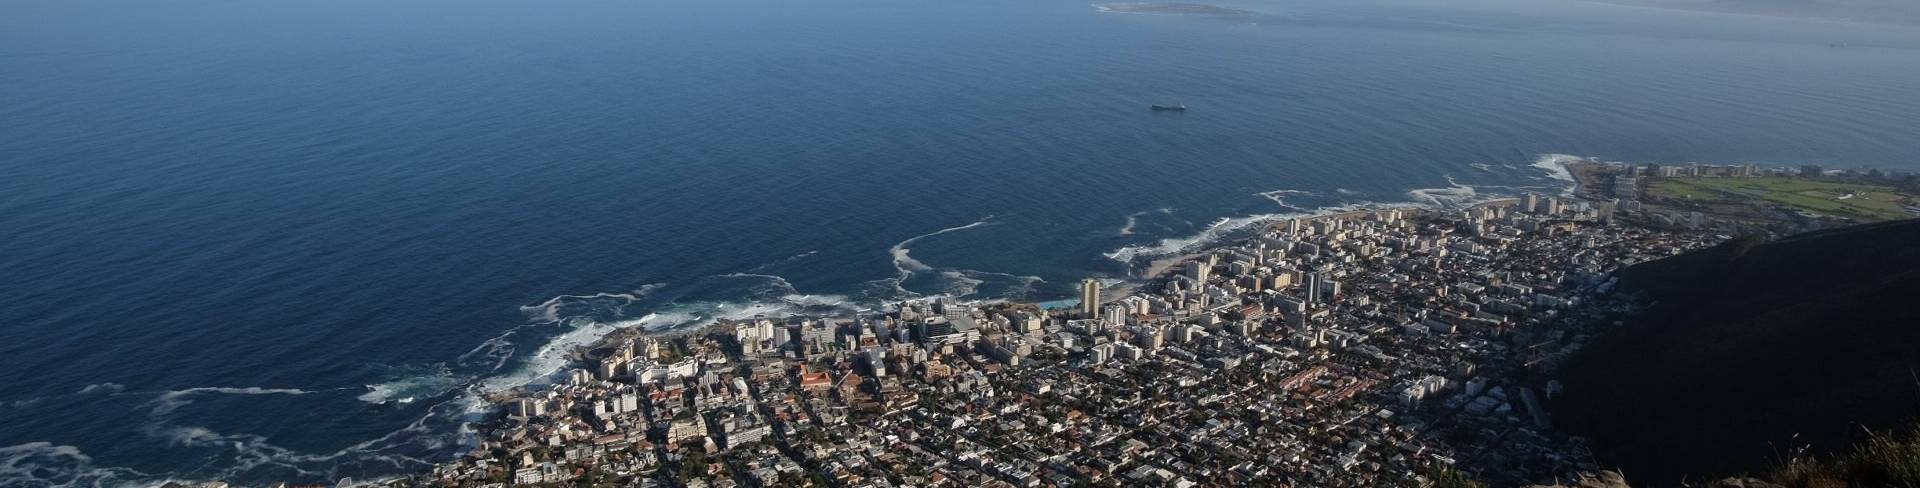 Кейптаун - столица ЮАР